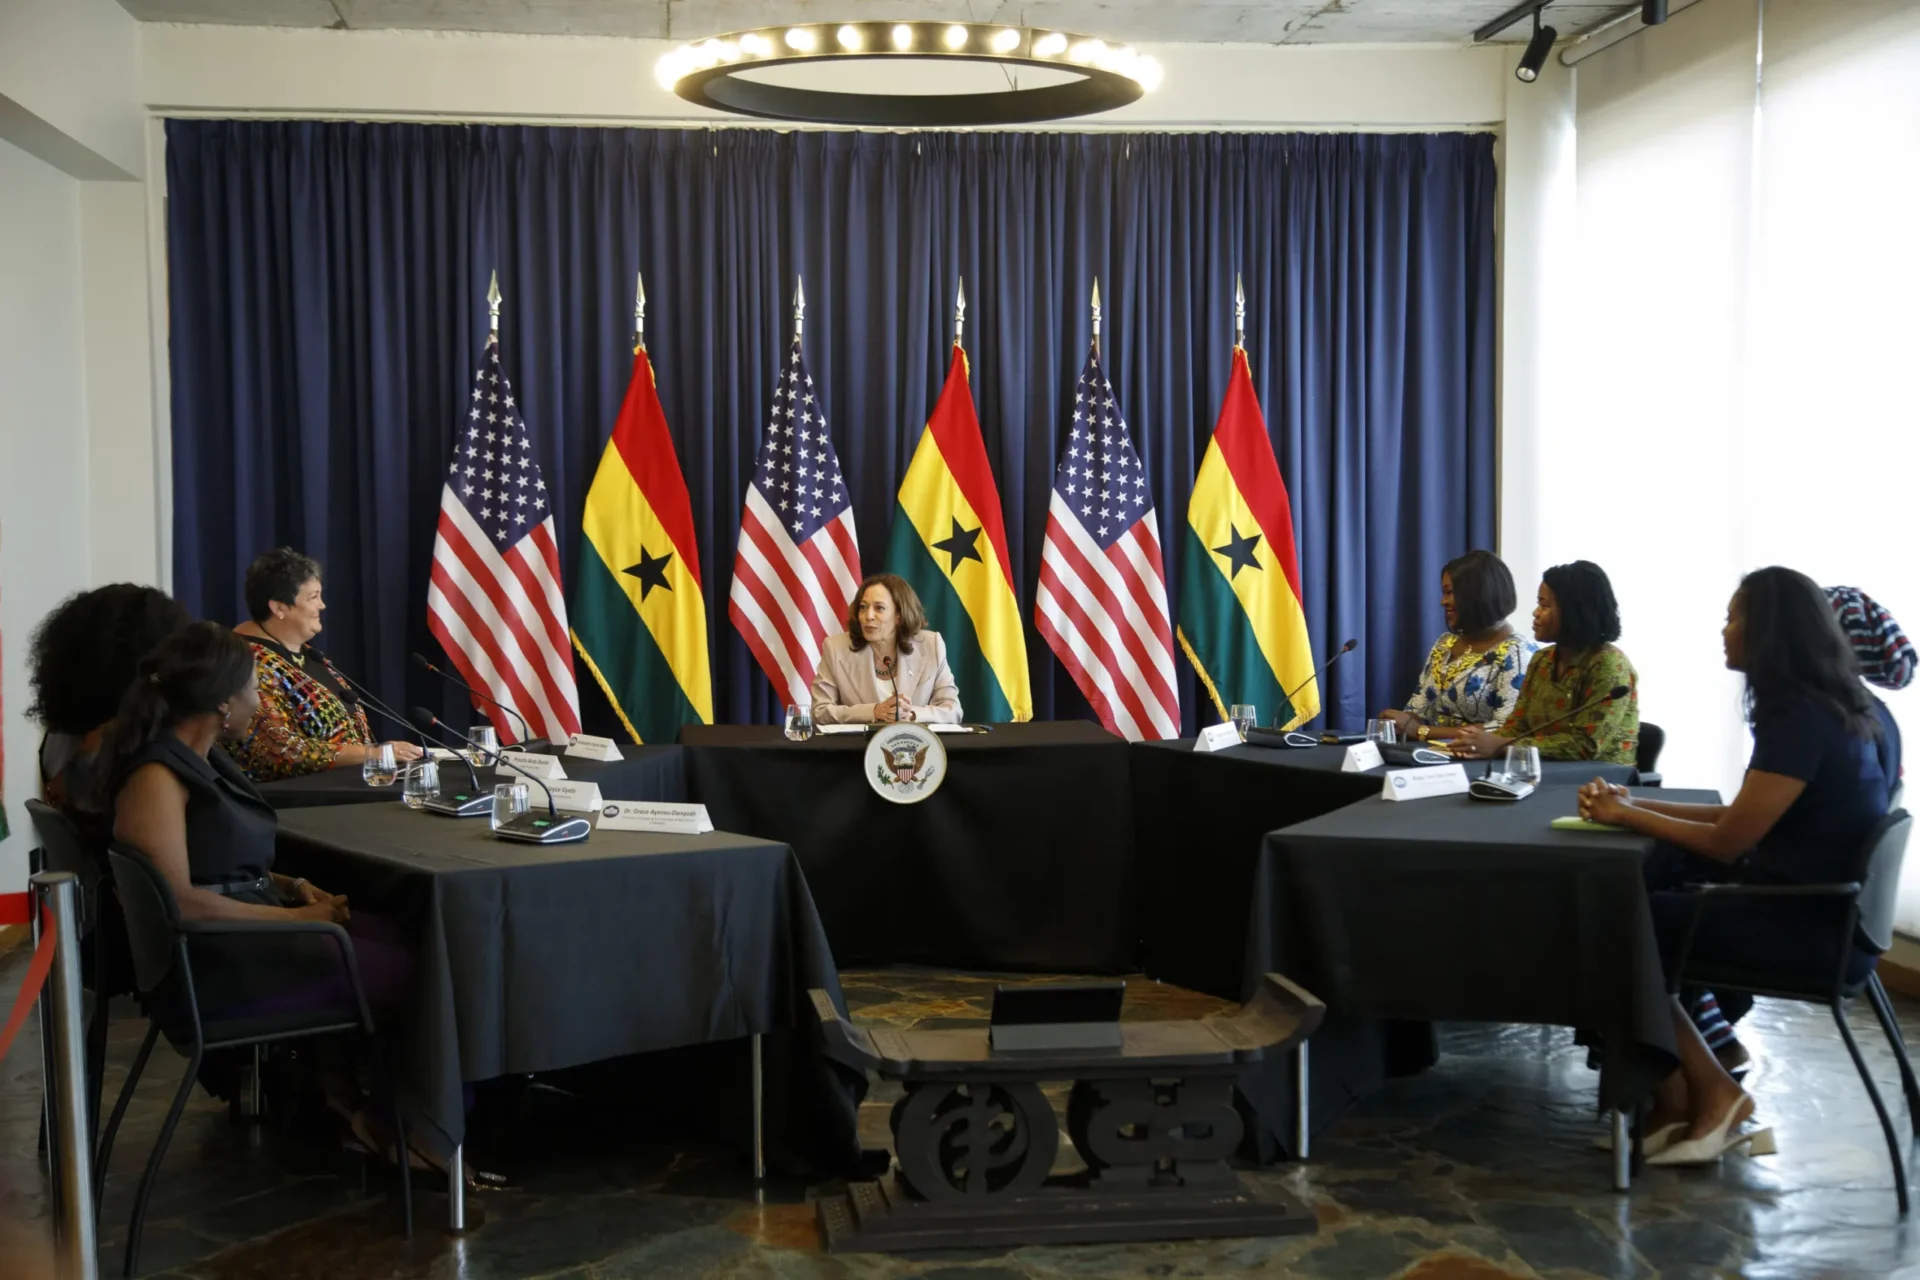 Harris busca reformular las opiniones de EE. UU. sobre África y fomentar la asociación